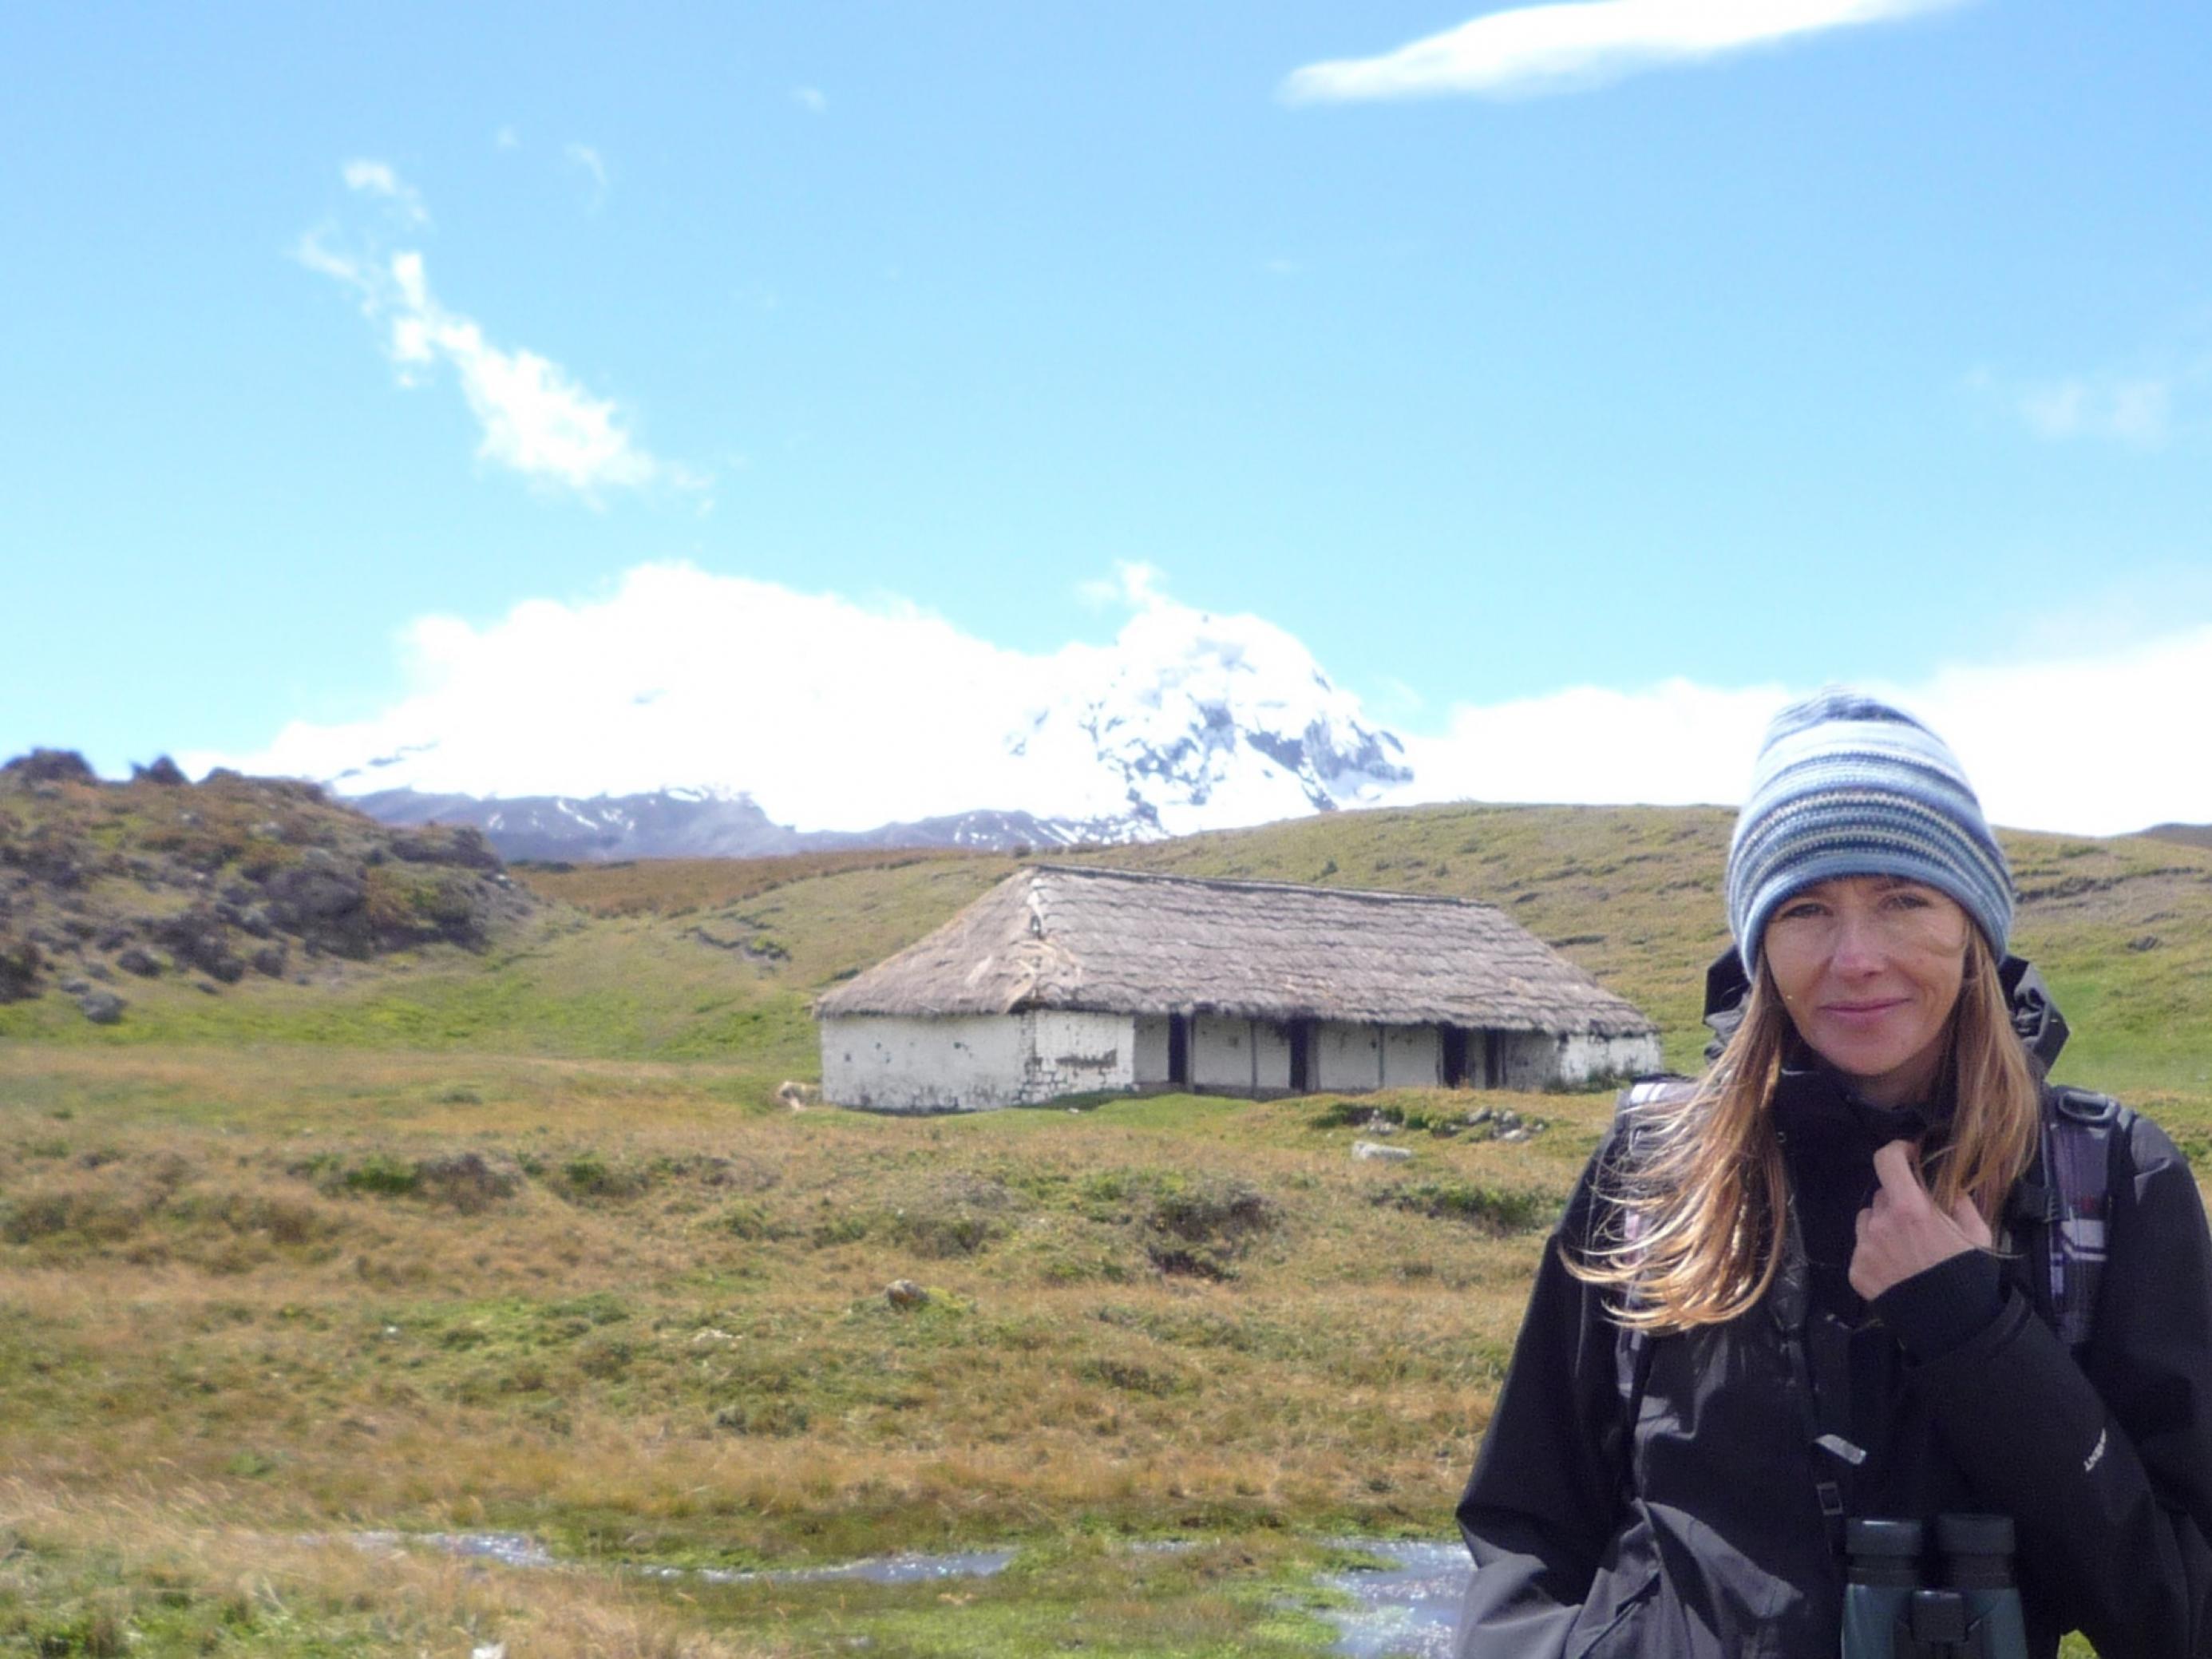 Aufnahme von Andrea Wulf. Sie trägt eine Mütze und steht vor einer hügeligen Landschaft mit einem alten Gebäude. Im Hintergrund sieht man einen schneebedeckten Berg.